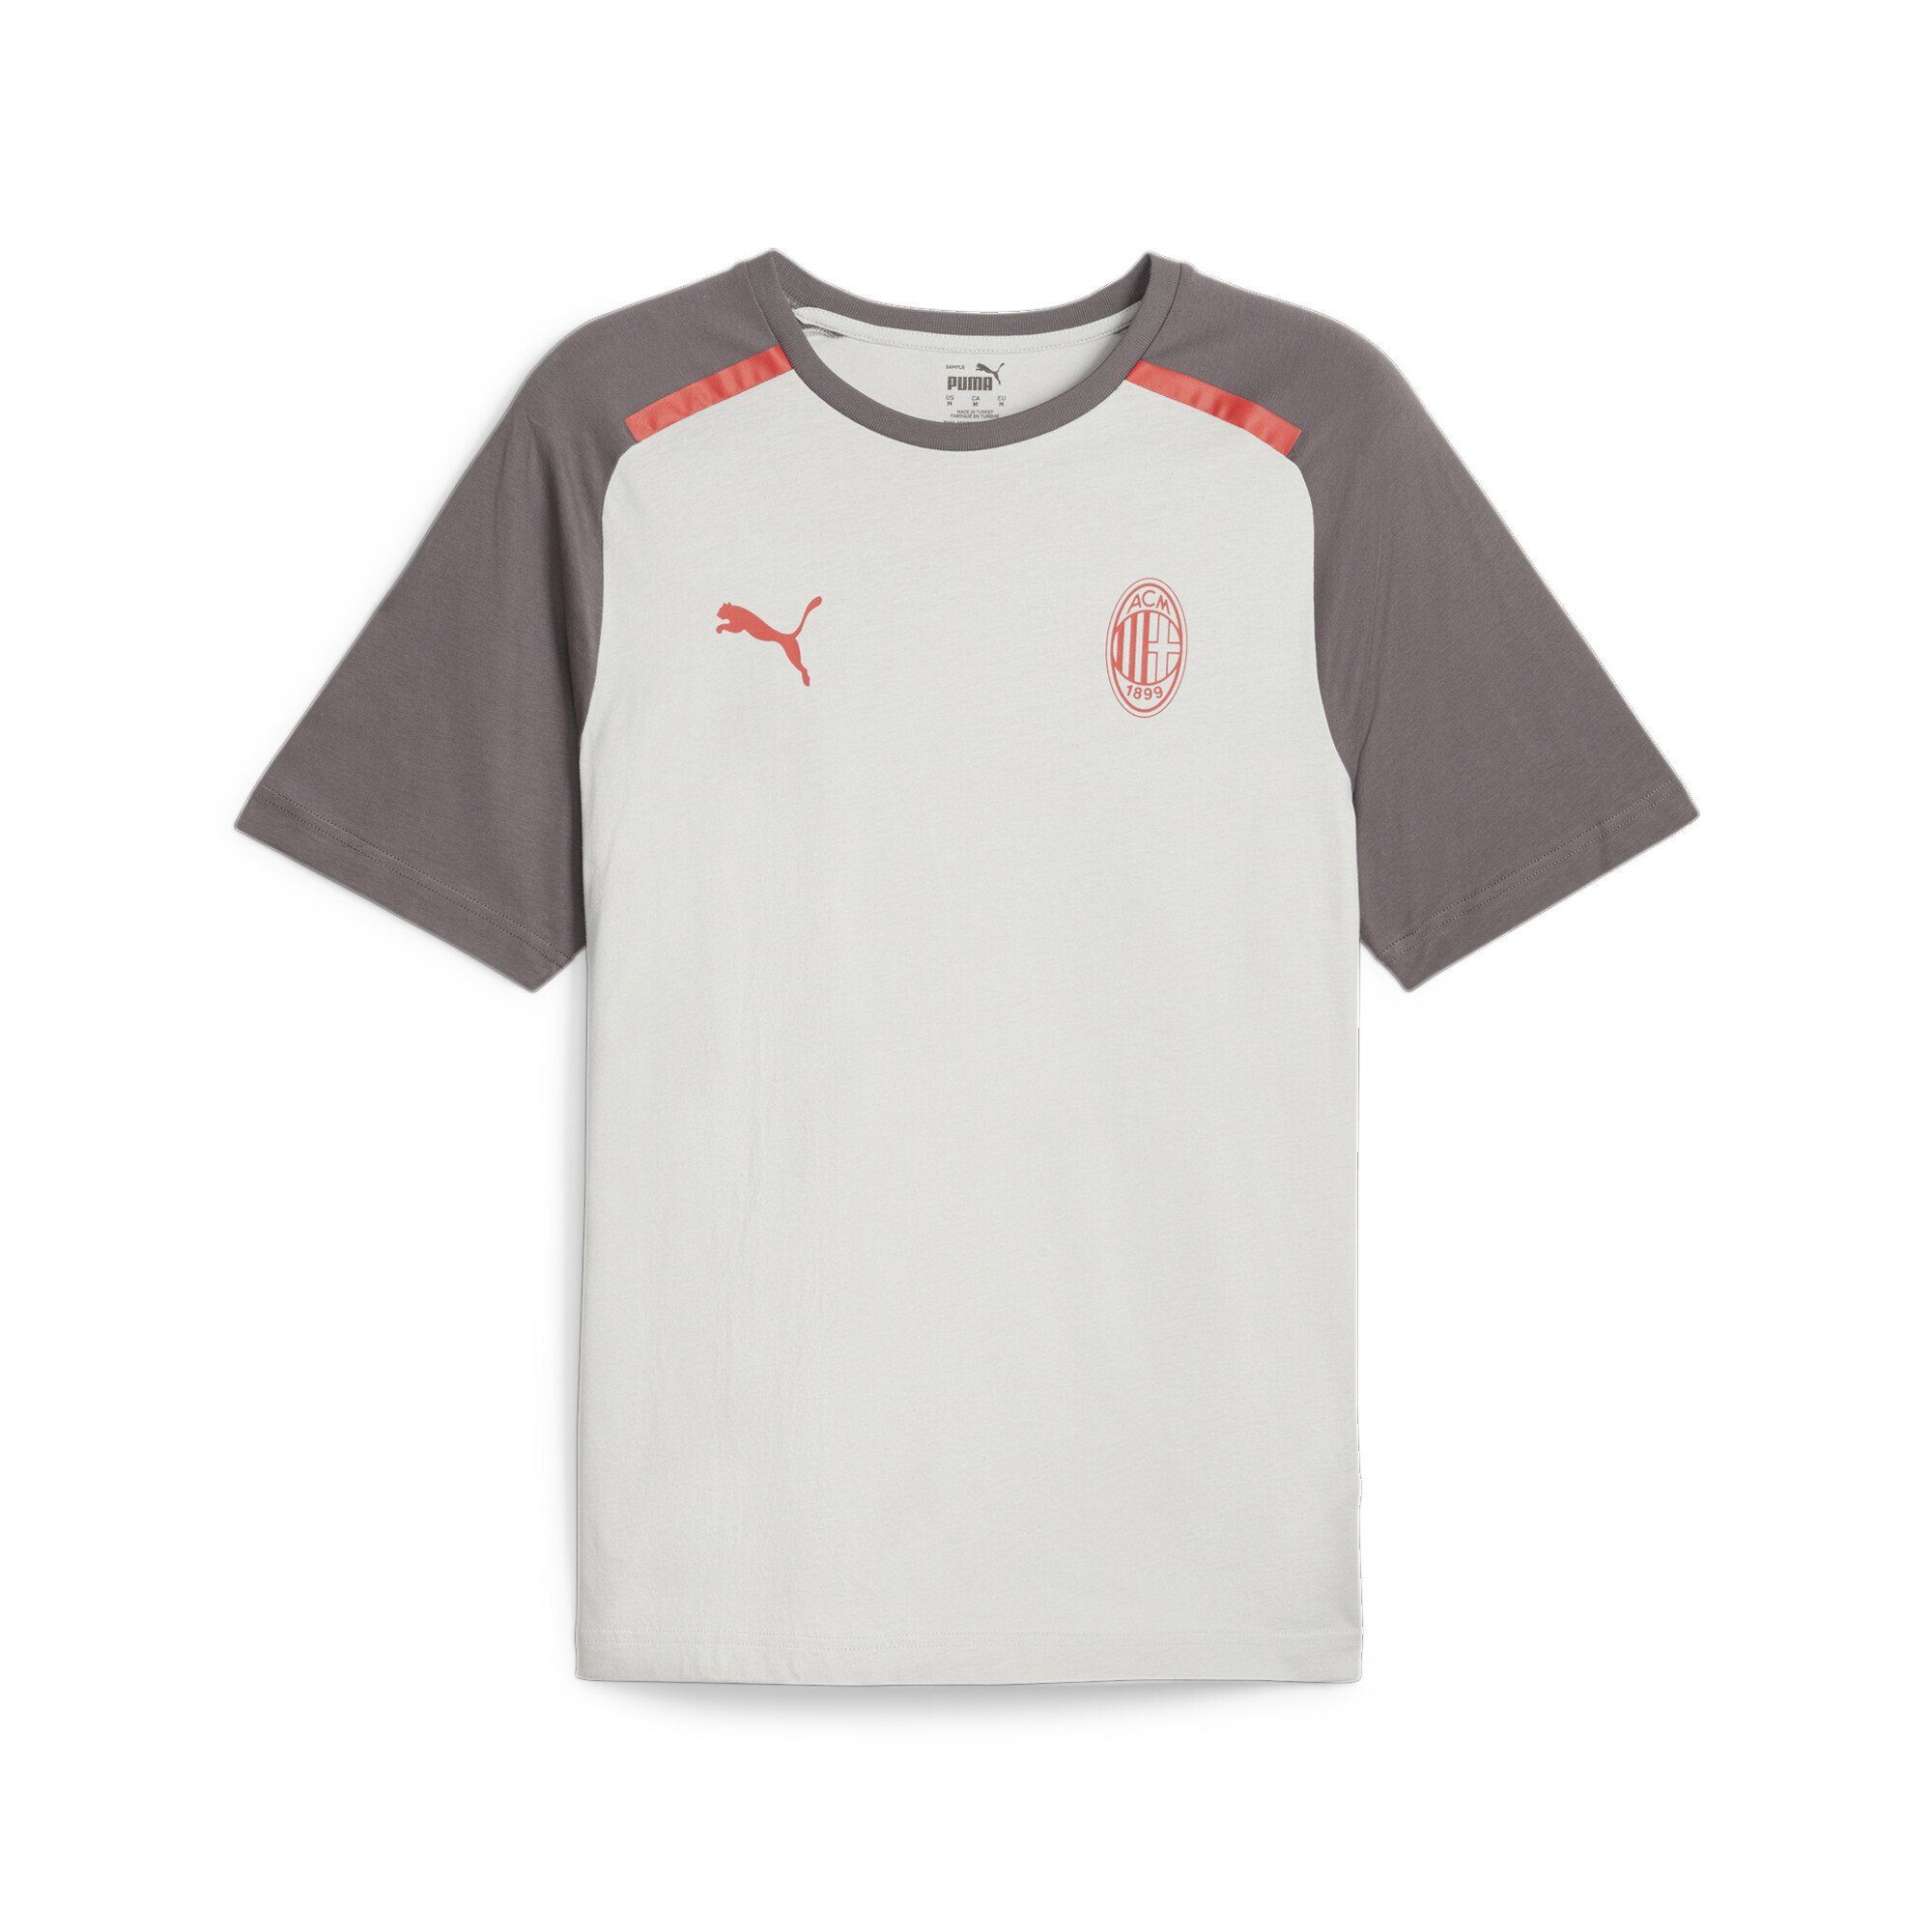 PUMA T-Shirt AC Milan Football Casuals T-Shirt Herren Cool Light Gray Dark